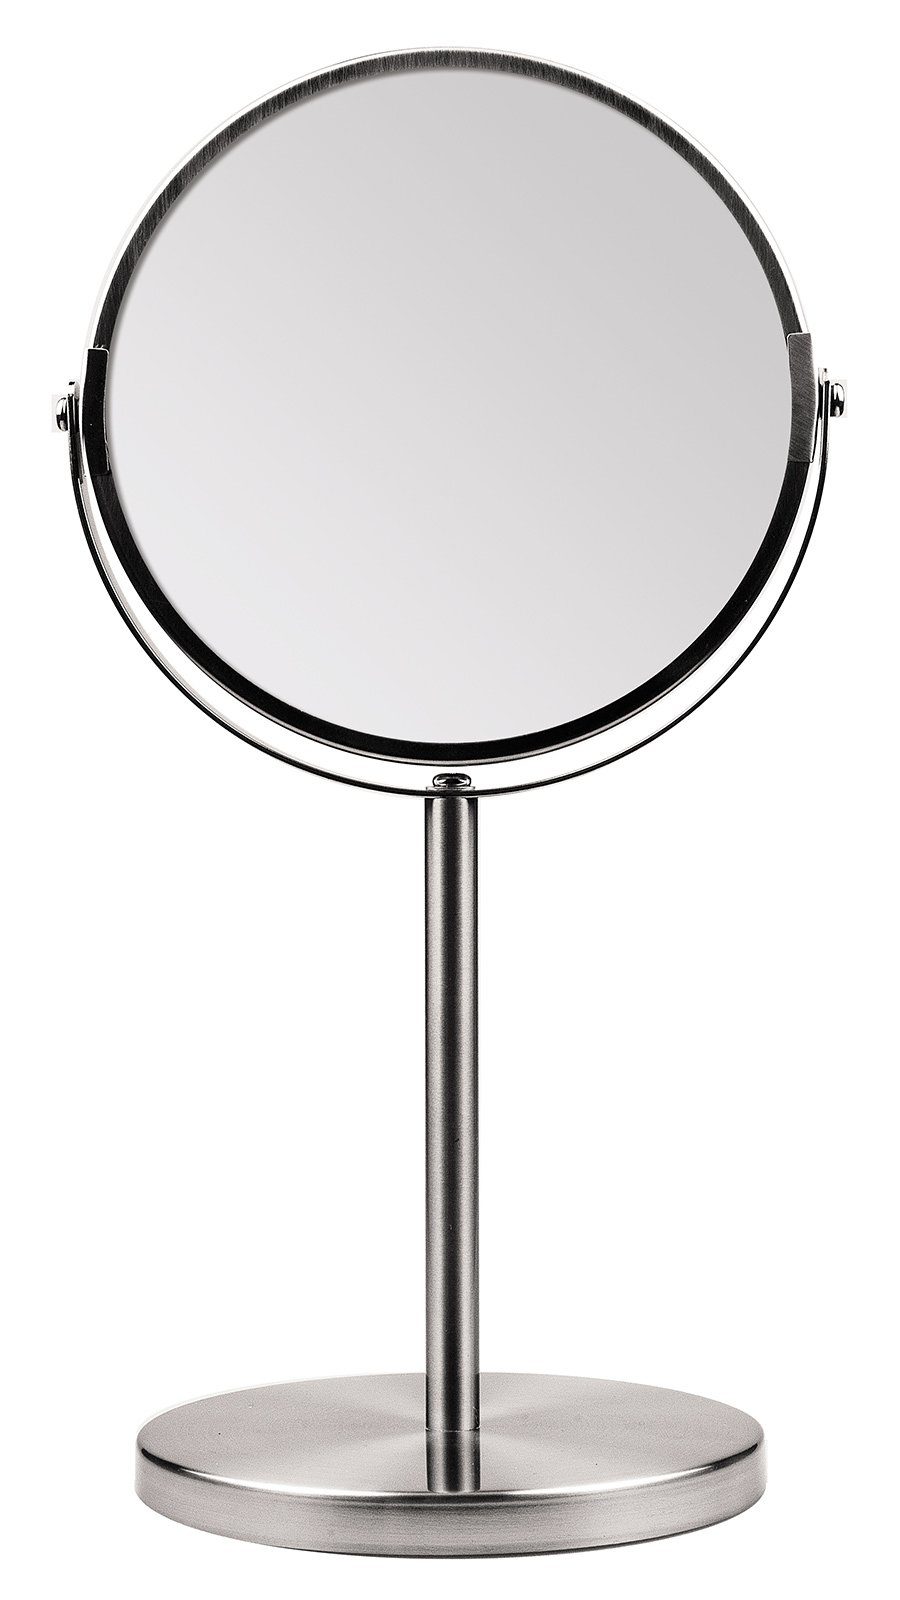 Koskaderm Spiegel Metall Stand-Spiegel 2-fach Vergrößerung, 34cm Ø Kosmetex Kosmetik-Spieg Spiegelflächen, 2 mit 16cm